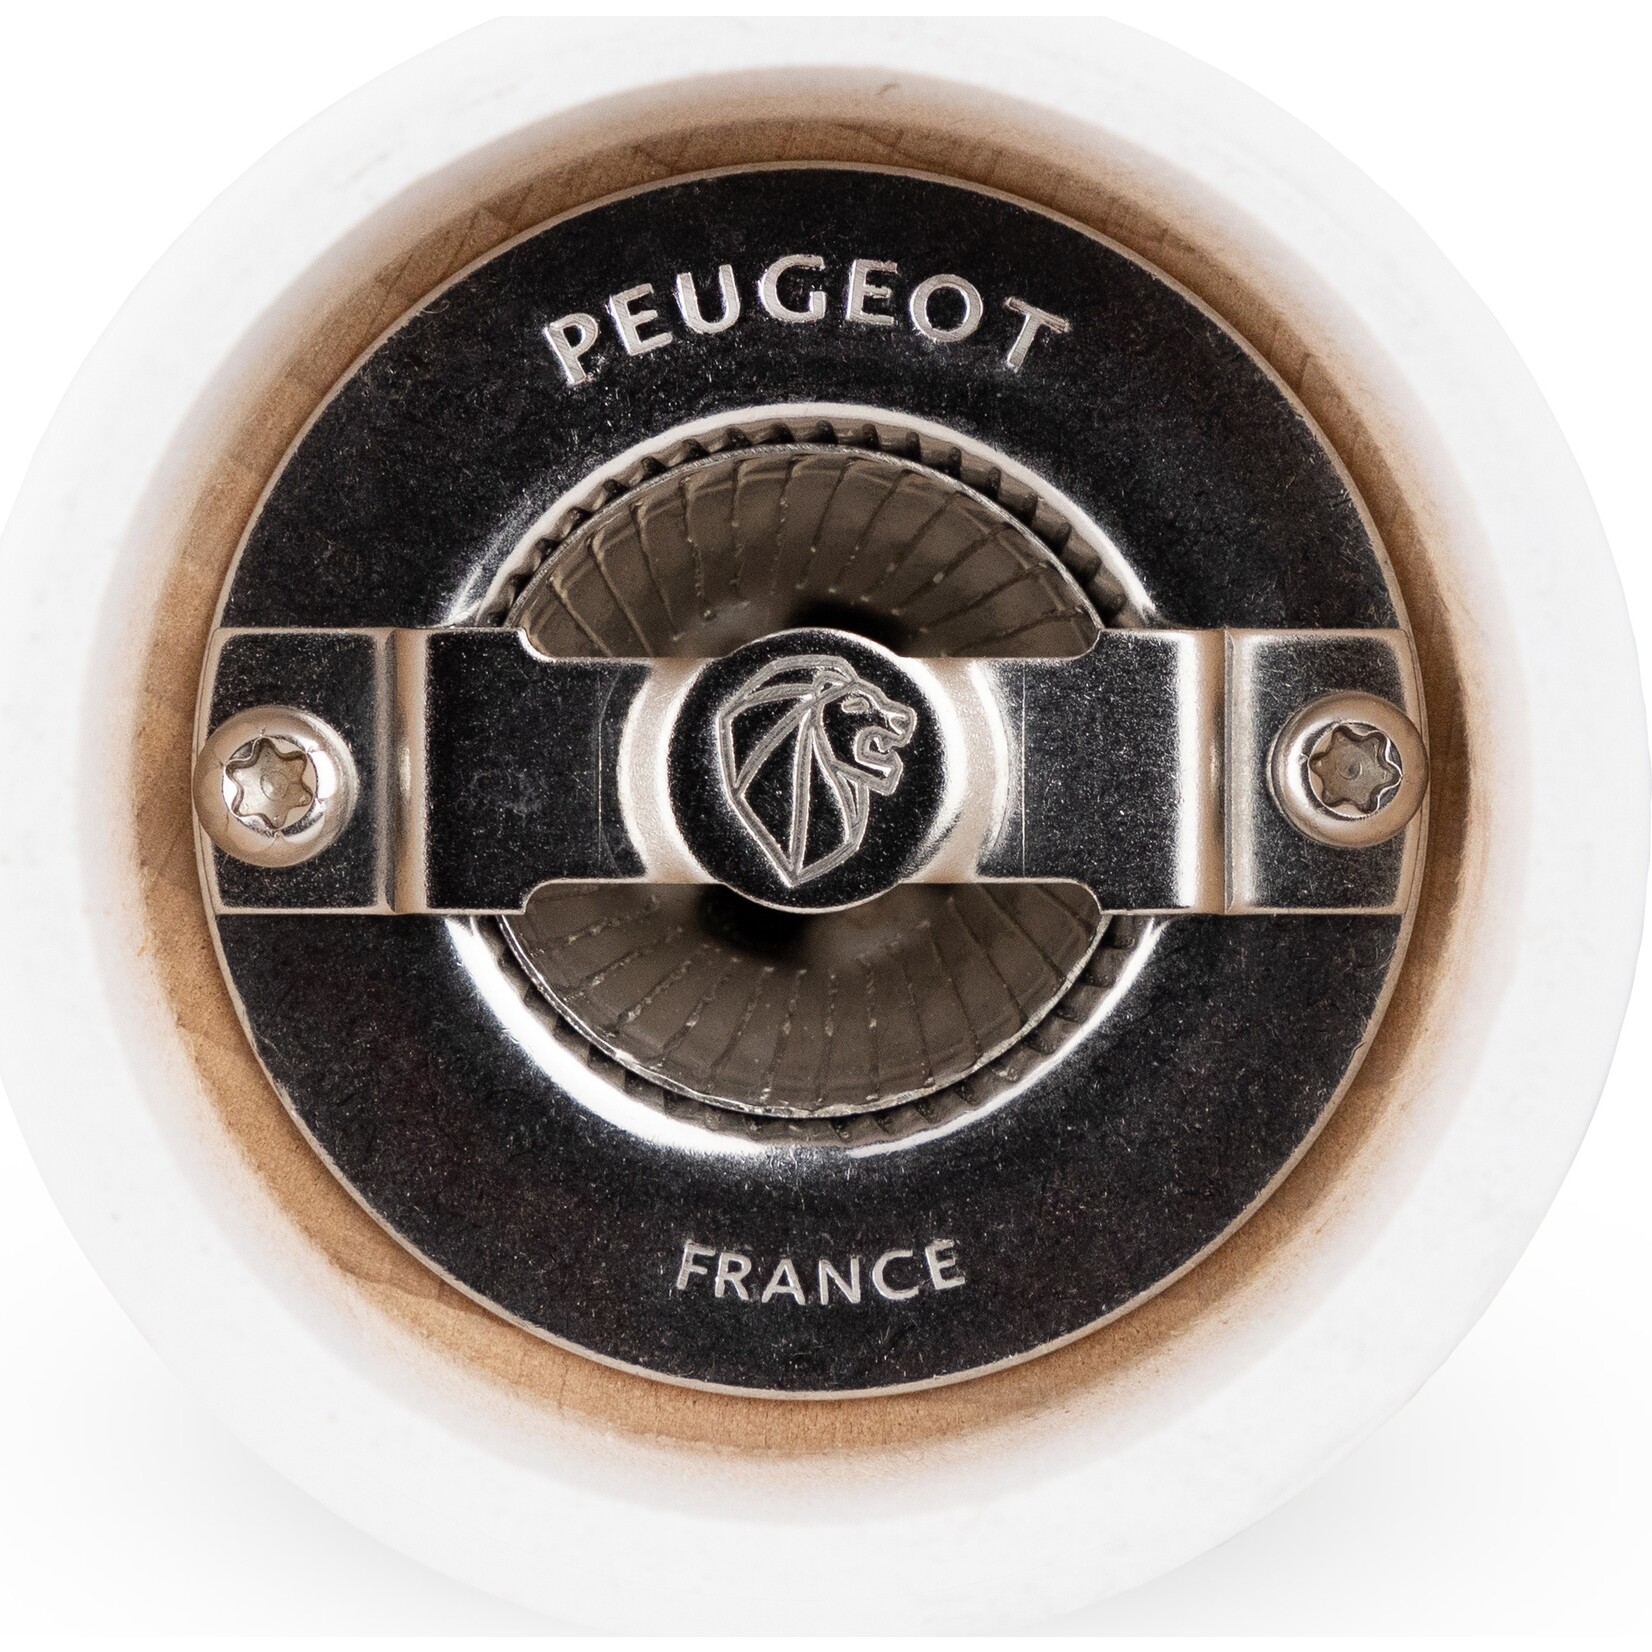 Peugeot Peugeot Tahiti peper- en zoutmolen 15 cm, mat zwart & mat wit, duo